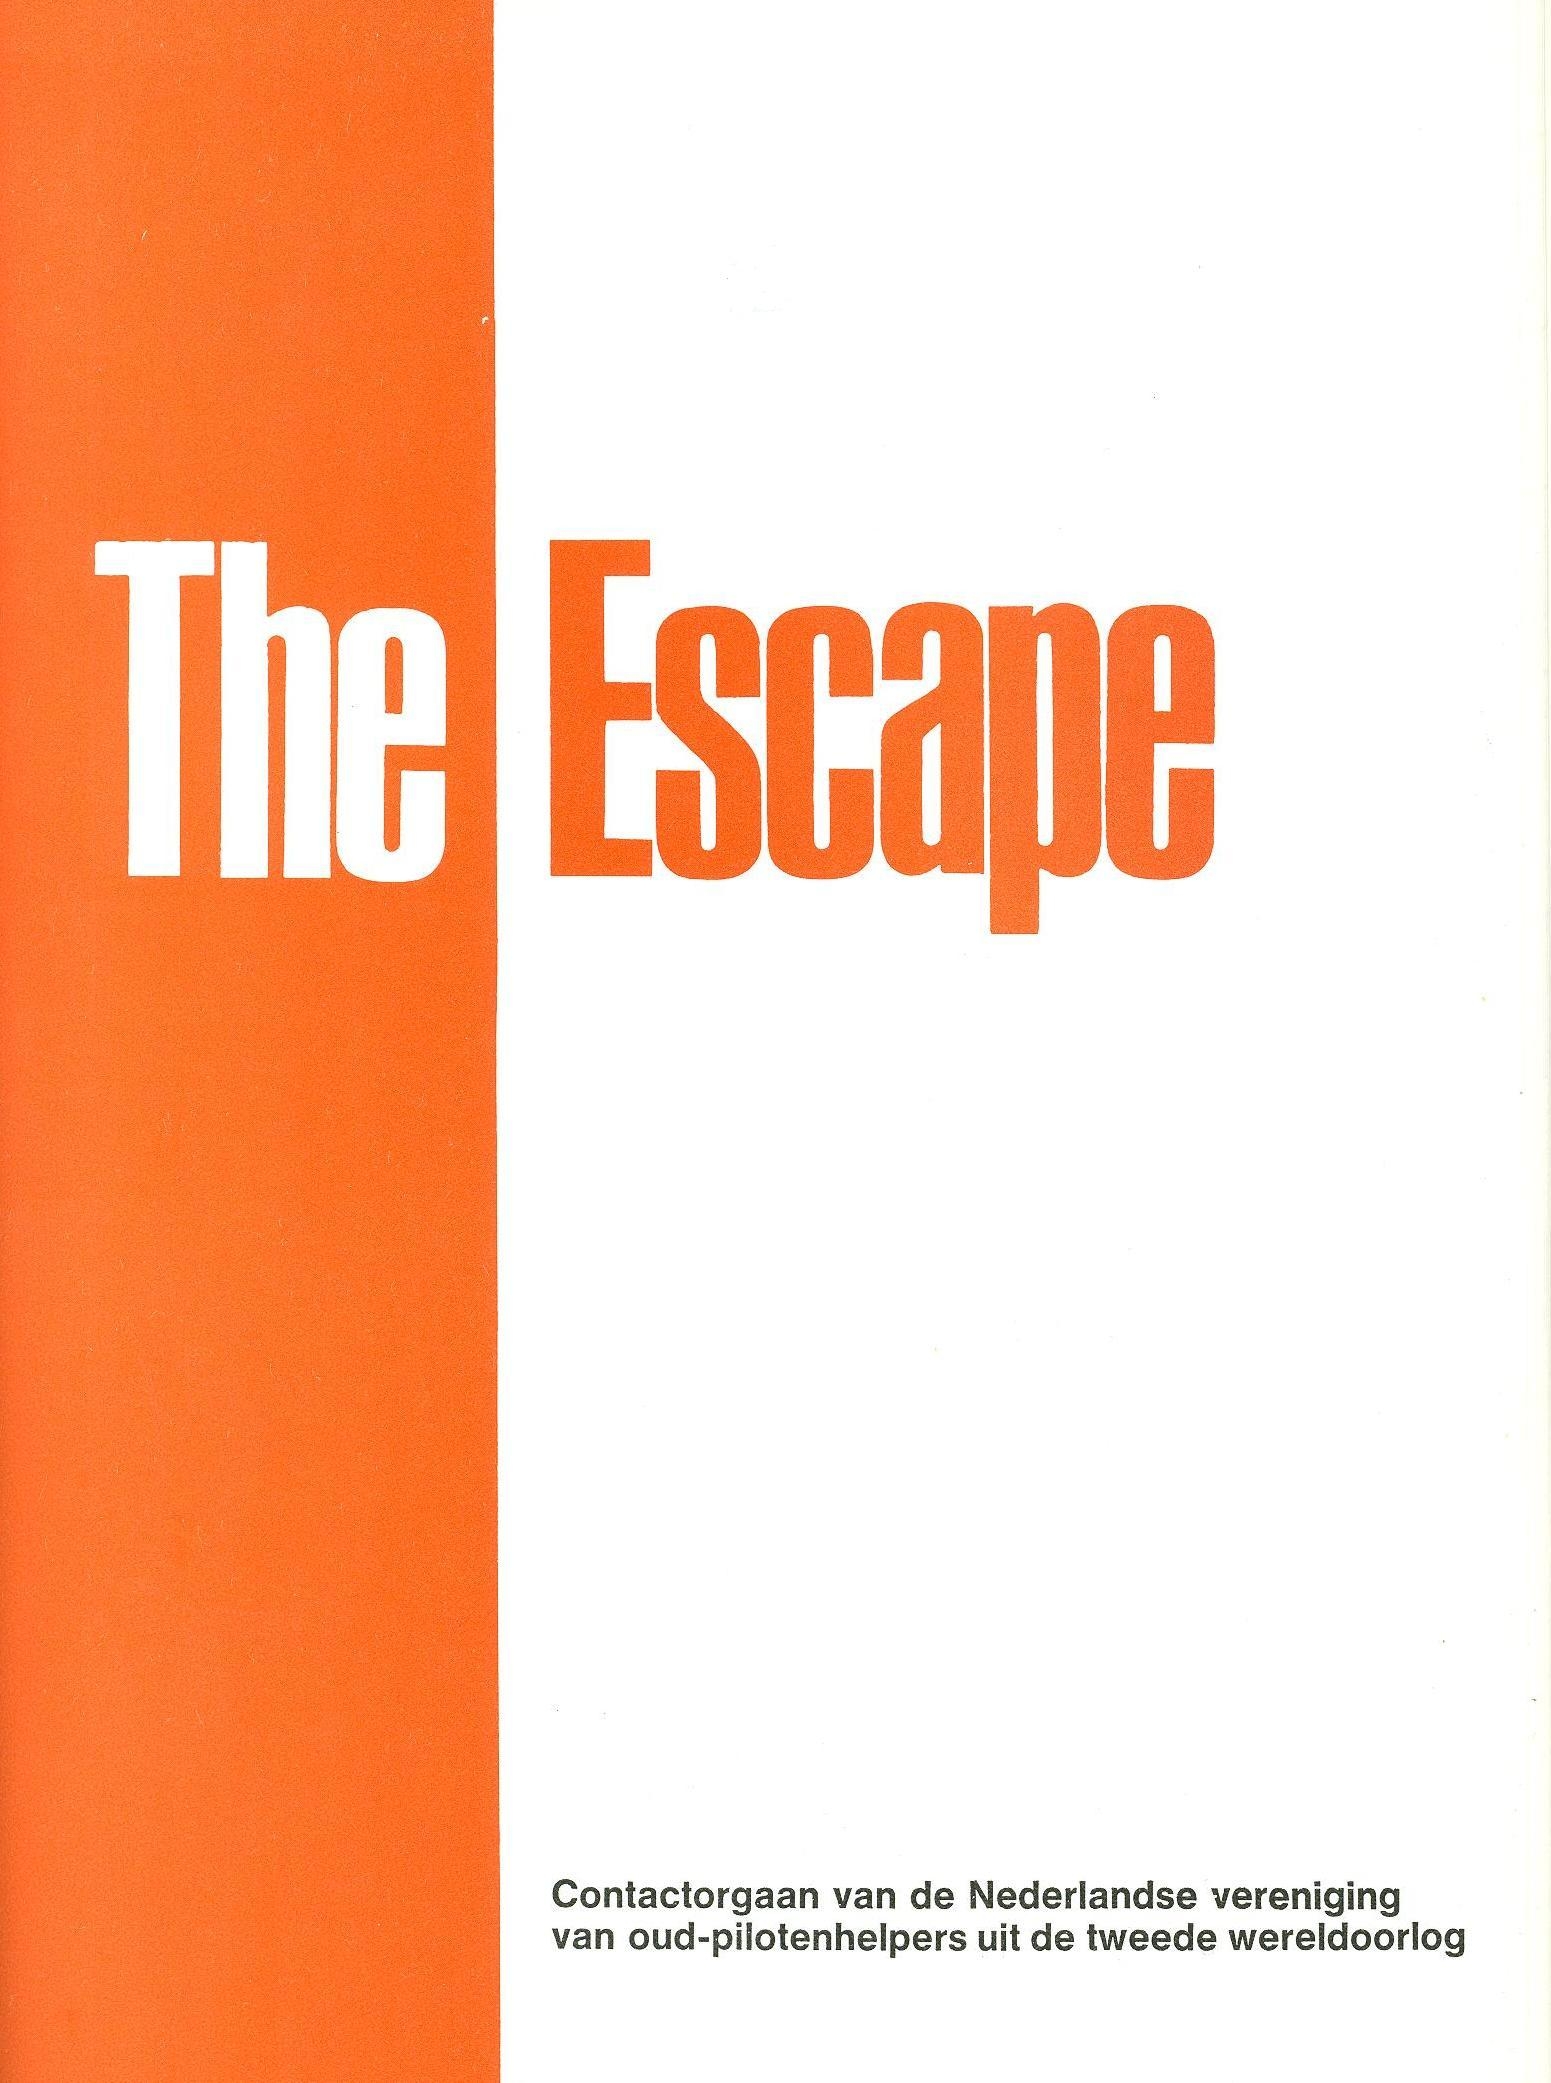 Omslag van het periodiek van The Escape